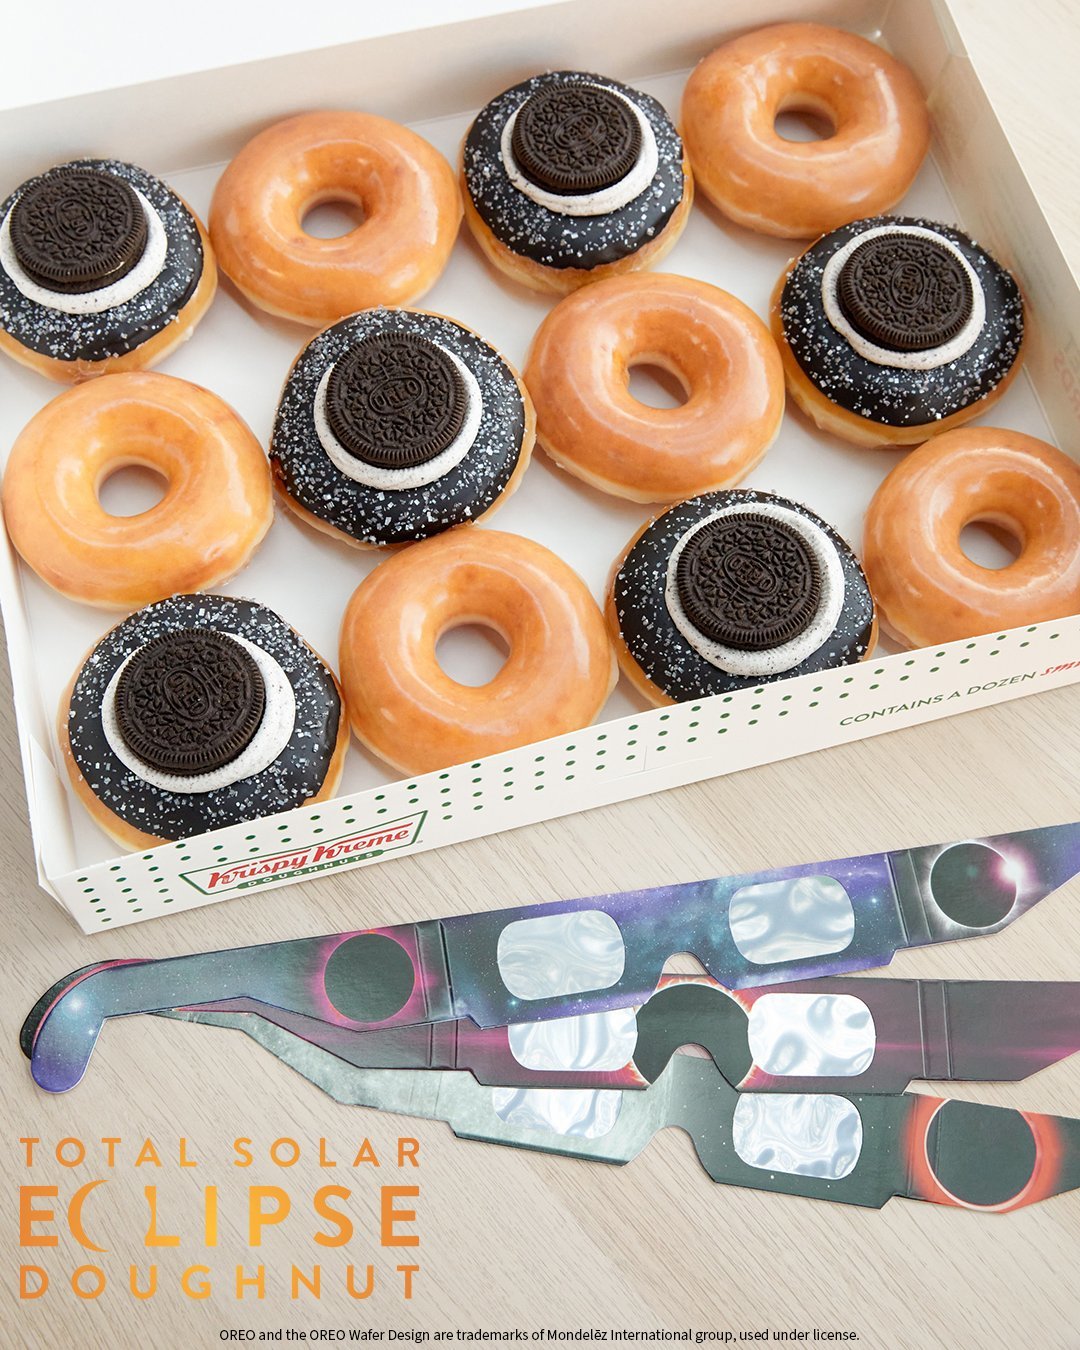 크리스피크림은 오레오사와 협업해 한정판 ‘개기일식 도넛’을 출시했다. 개기일식 관측용 안경도 함께 판매한다. 사진 출처 크리스피크림 X(구 트위터)